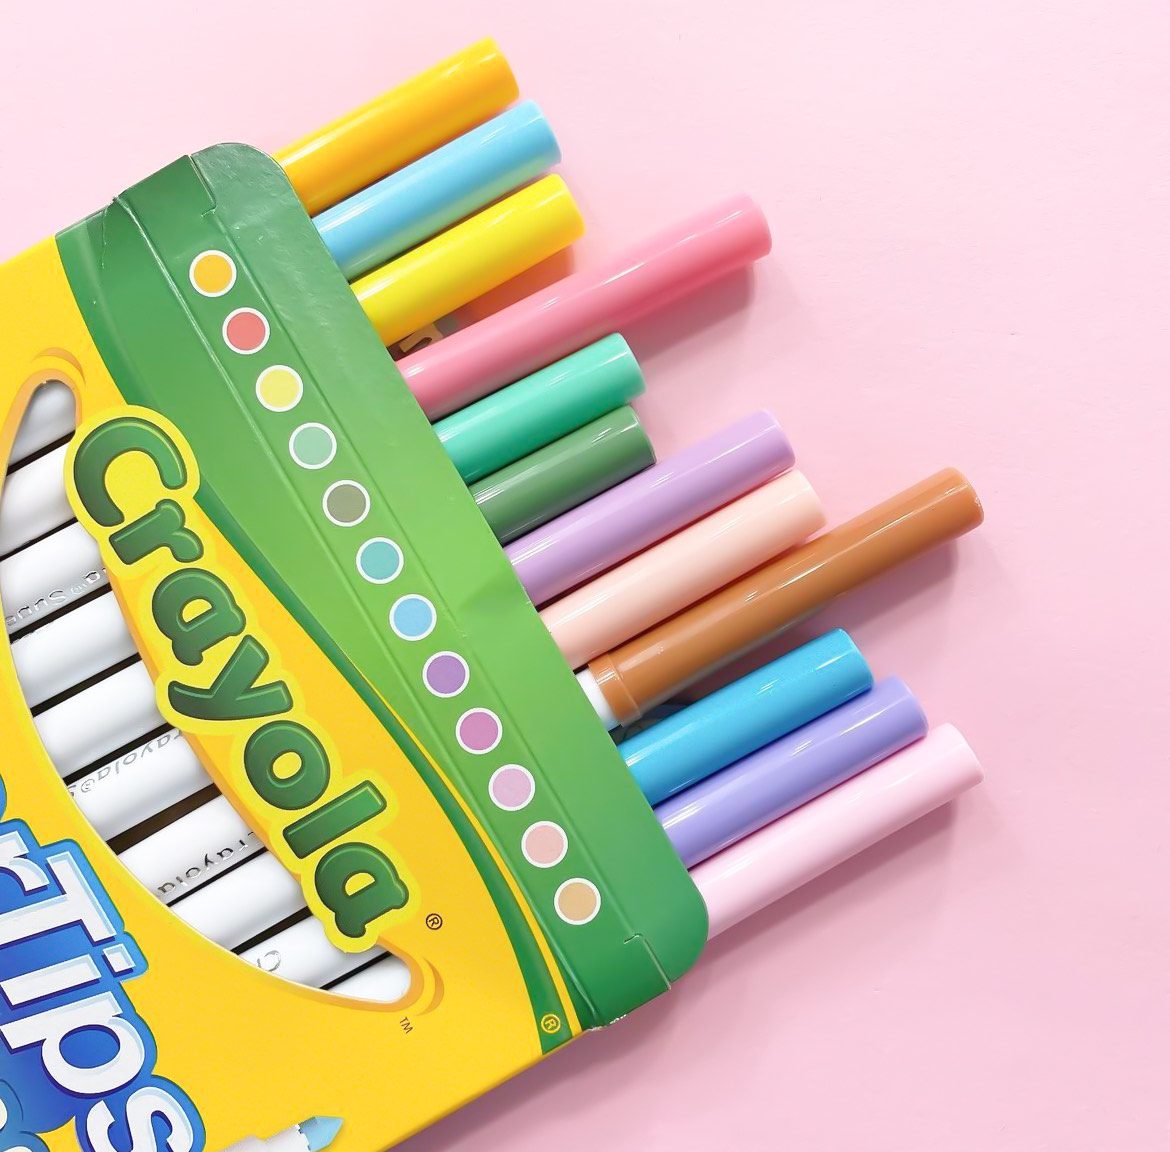 Marcadores Plumones Crayola Super Tips Pastel 12 Colores